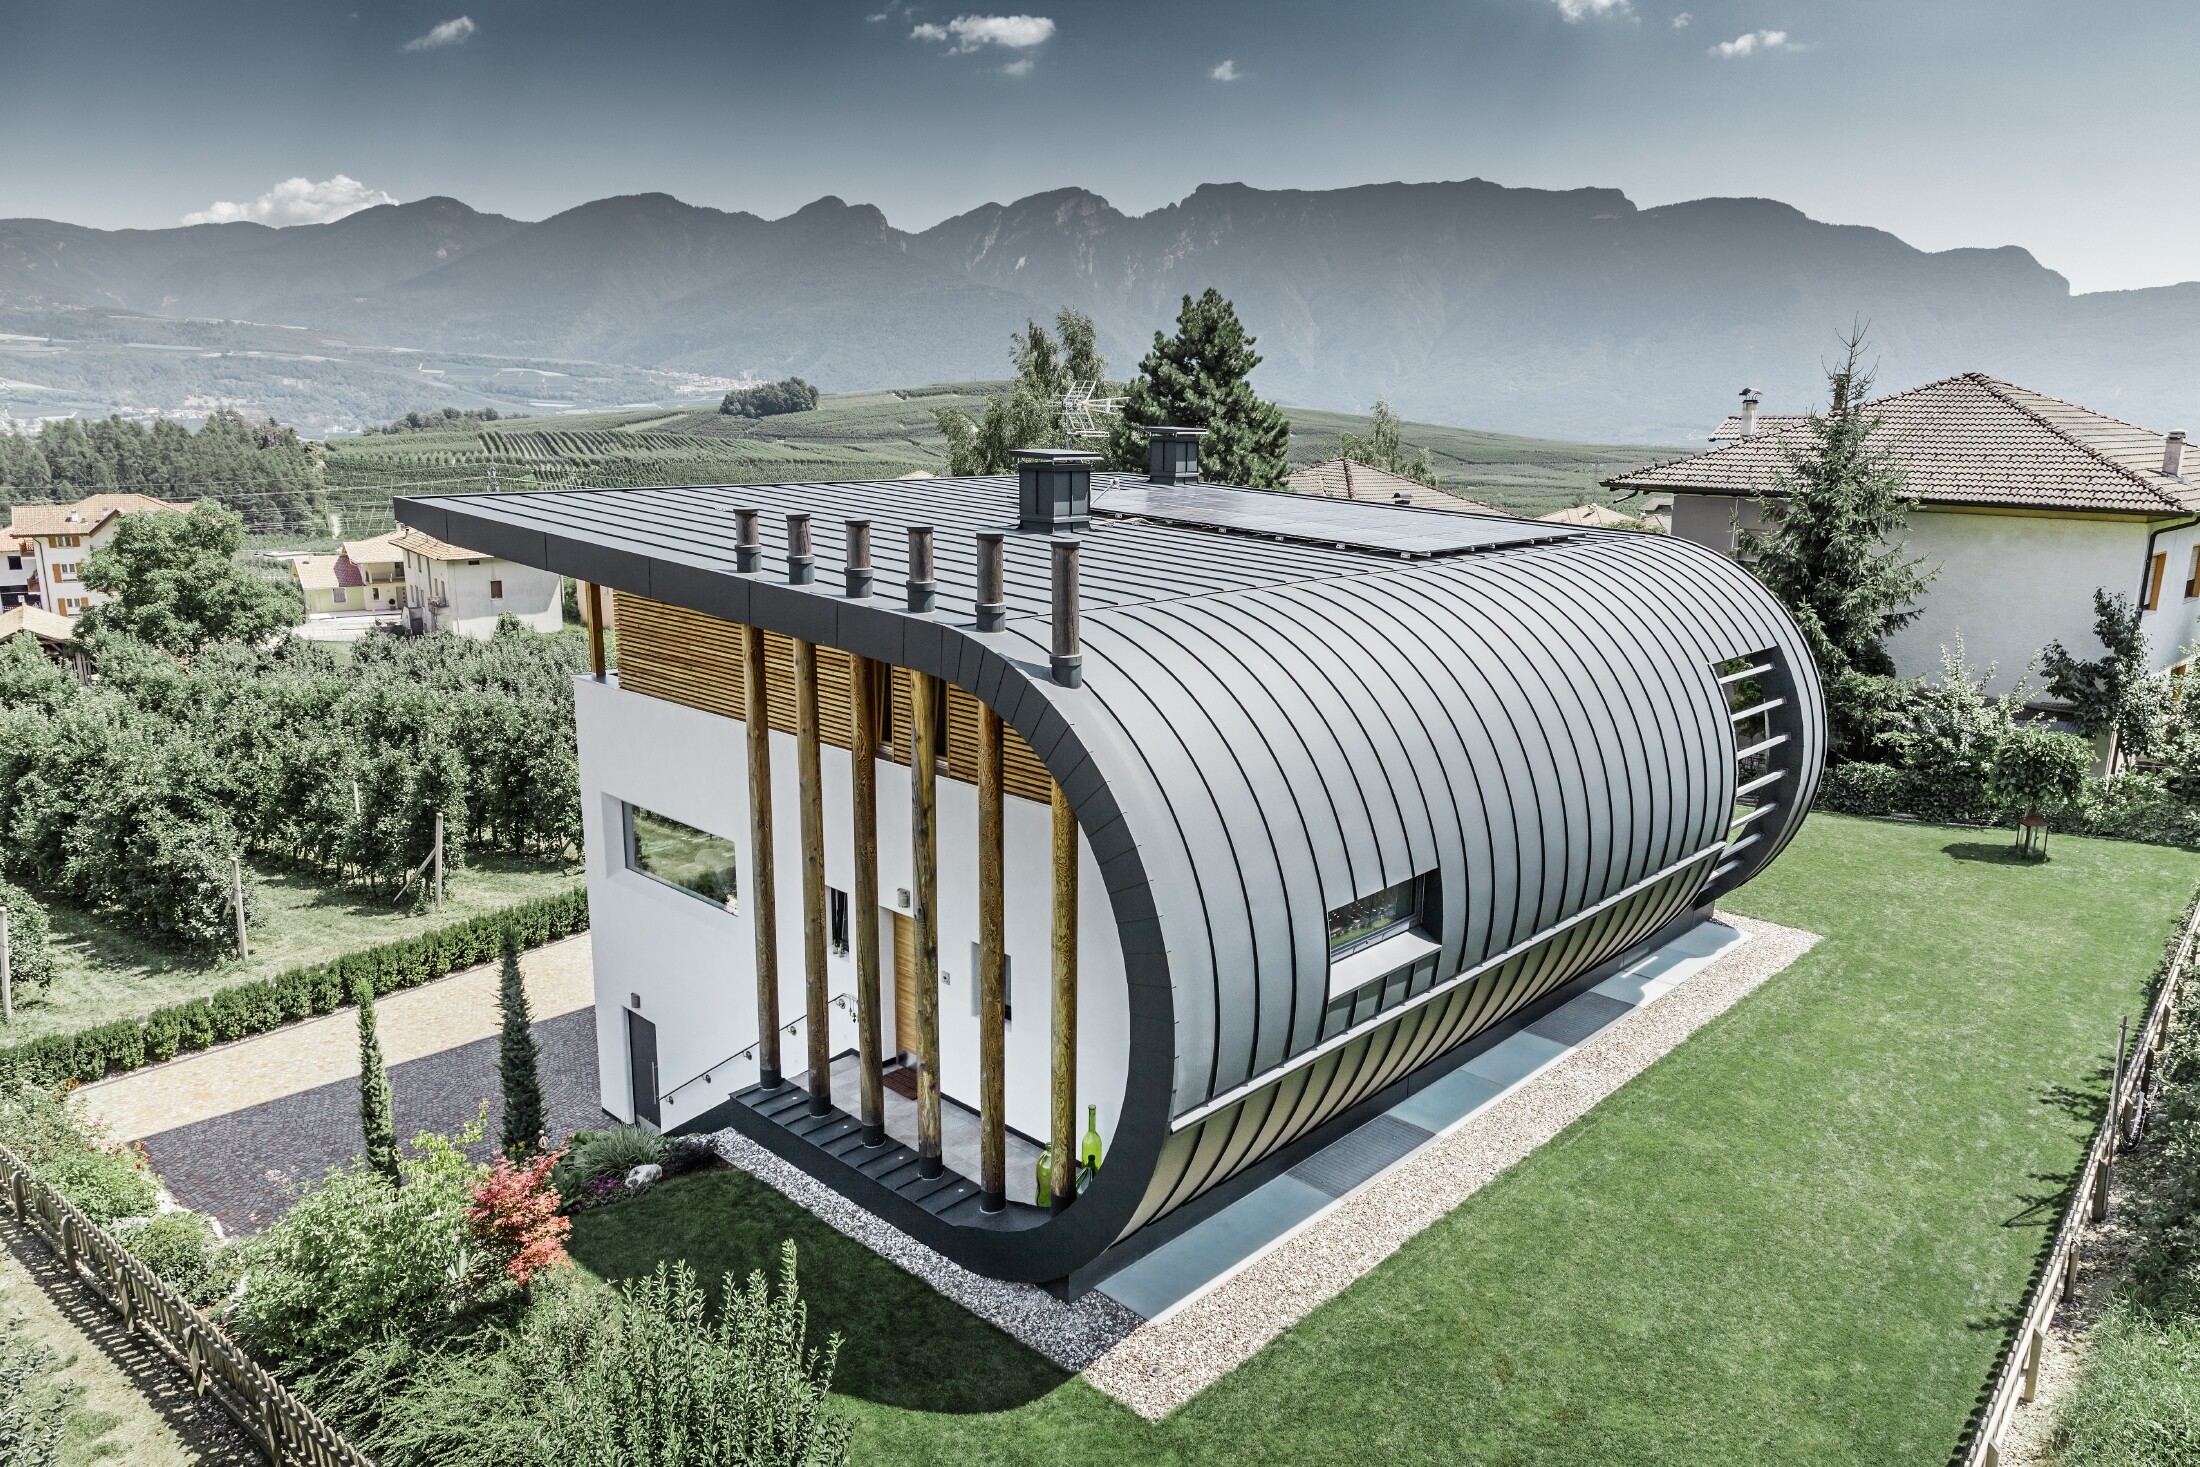 Foto aerea di Casa Giovannini in Italia con la facciata arrotondata in Prefalz P.10 antracite.